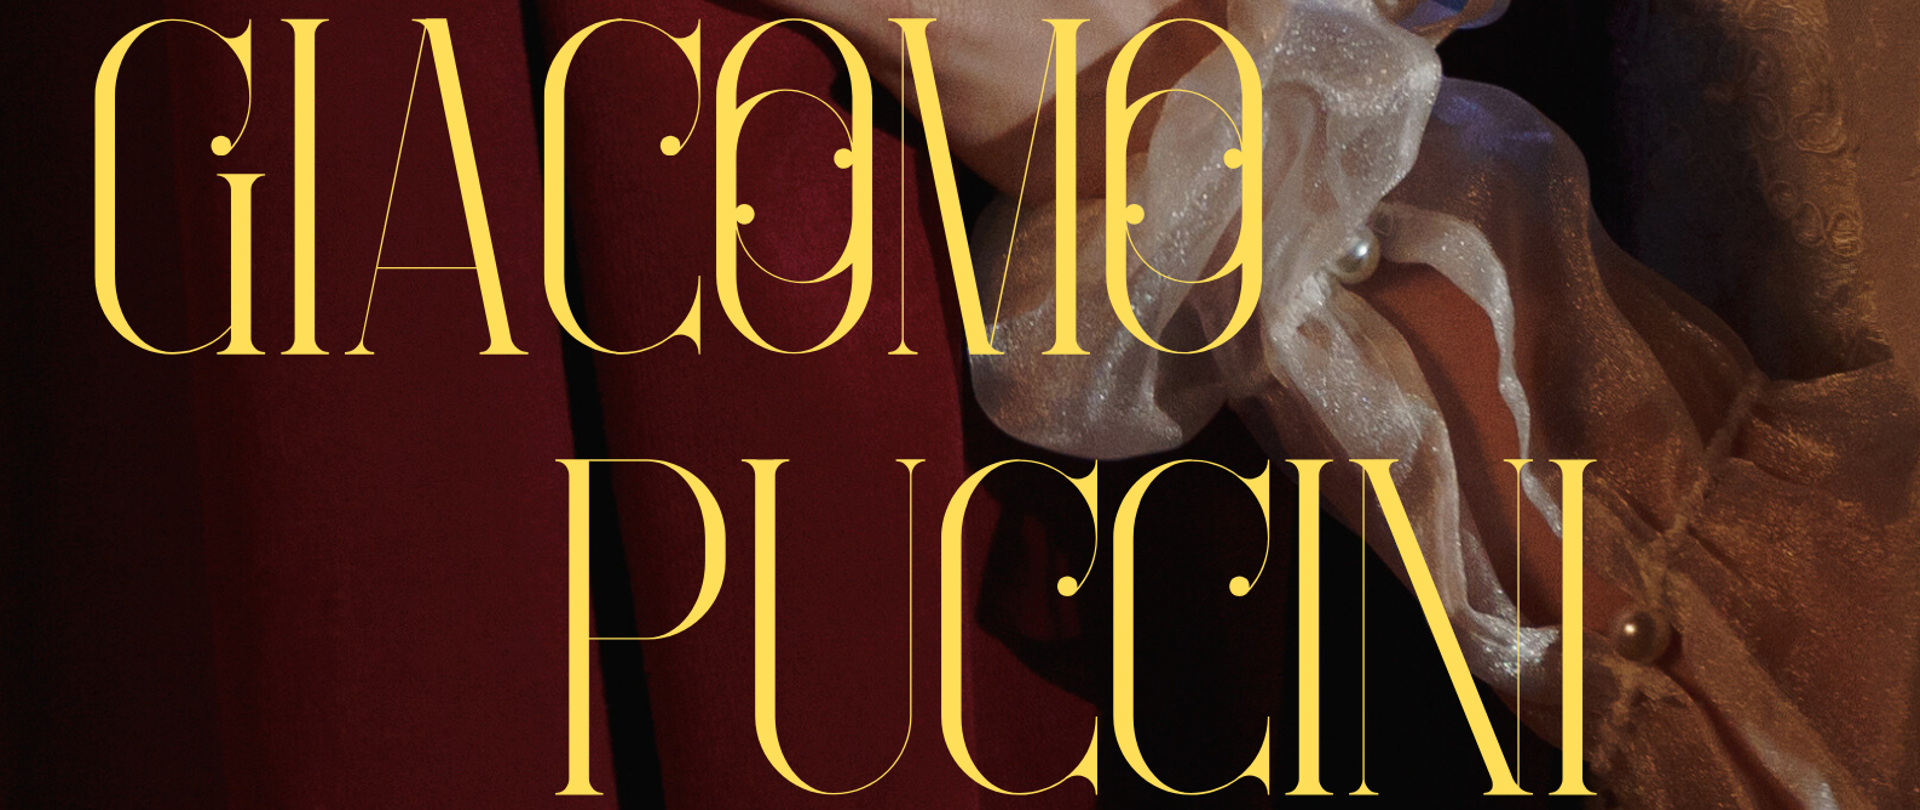 Plakat jest ogłoszeniem o konkursie wiedzy o życiu i twórczości Giacomo
Pucciniego organizowanego przez sekcję przedmiotów ogólnomuzycznych,
rytmiki, śpiewu i instrumentów klawiszowych. Tłem plakatu jest zdjęcie
ręki, głównie od dłoni do łokcia ubranej w złotą, ozdobną, bufiastą
koszulę nawiązującą wyglądem i klimatem do XIX i XX wiecznej włoskiej
opery. Postać z plakatu trzyma w dłoni czerwoną kurtynę - również
element opery. W centrum plakatu widnieje imię i nazwisko artysty,
którego dotyczy konkurs - Giacomo Pucciniego. Jest ono napisane ozdobną
czcionką w żółtym kolorze. Poniżej znajdują się informacje o terminie:
11 marca godzina 16:00 oraz adnotacja, iż konkurs jest obowiązkowy dla
uczniów specjalności wokalistyka.